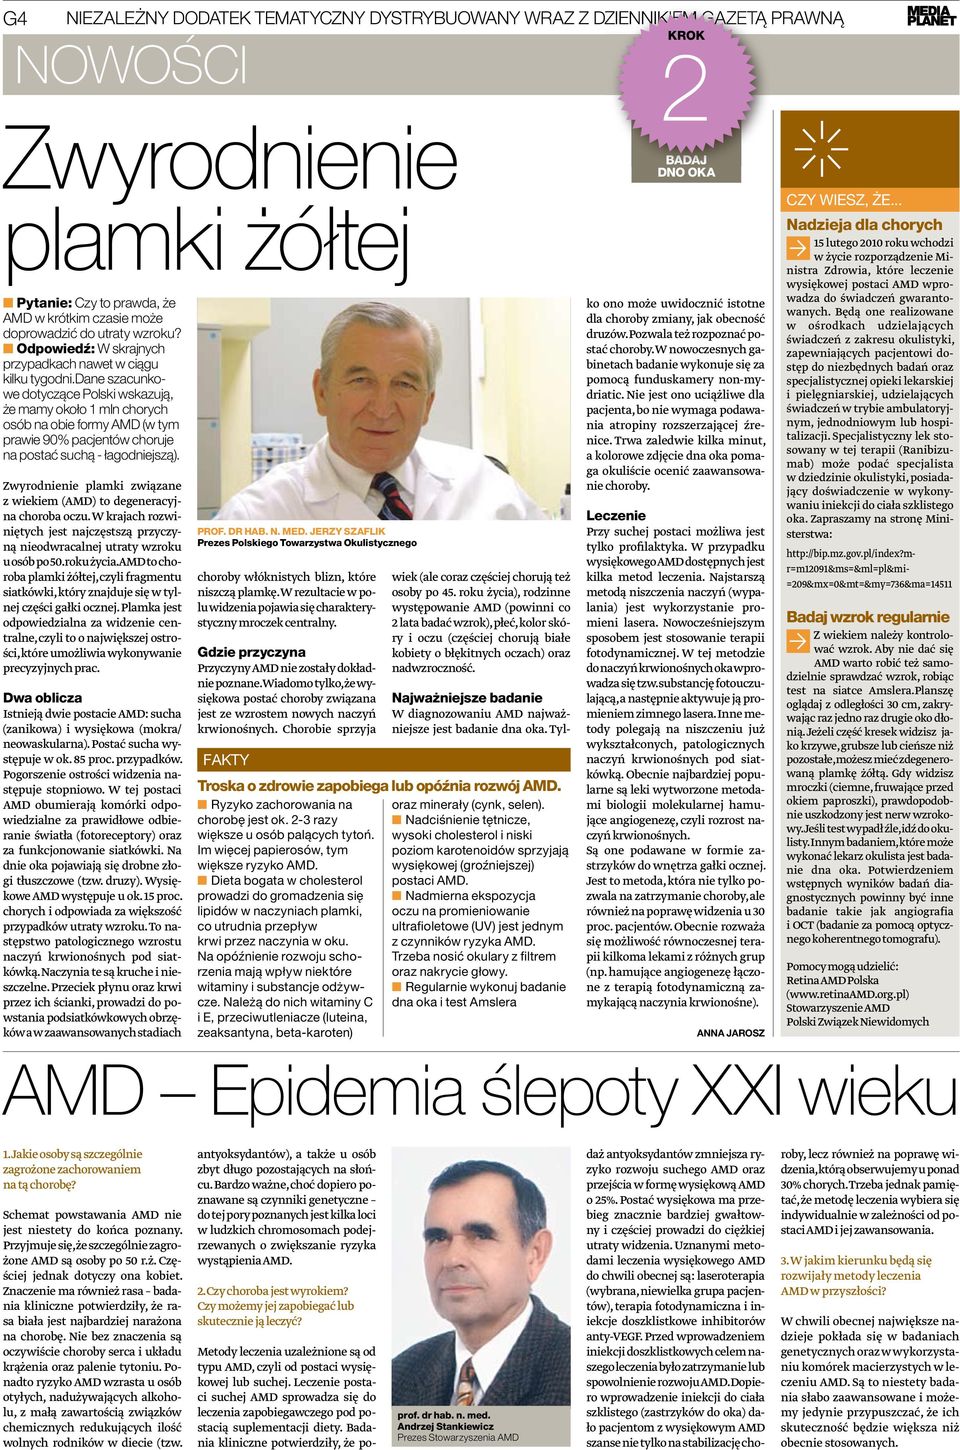 dane szacunkowe dotyczące polski wskazują, że mamy około 1 mln chorych osób na obie formy AMD (w tym prawie 90% pacjentów choruje na postać suchą - łagodniejszą).